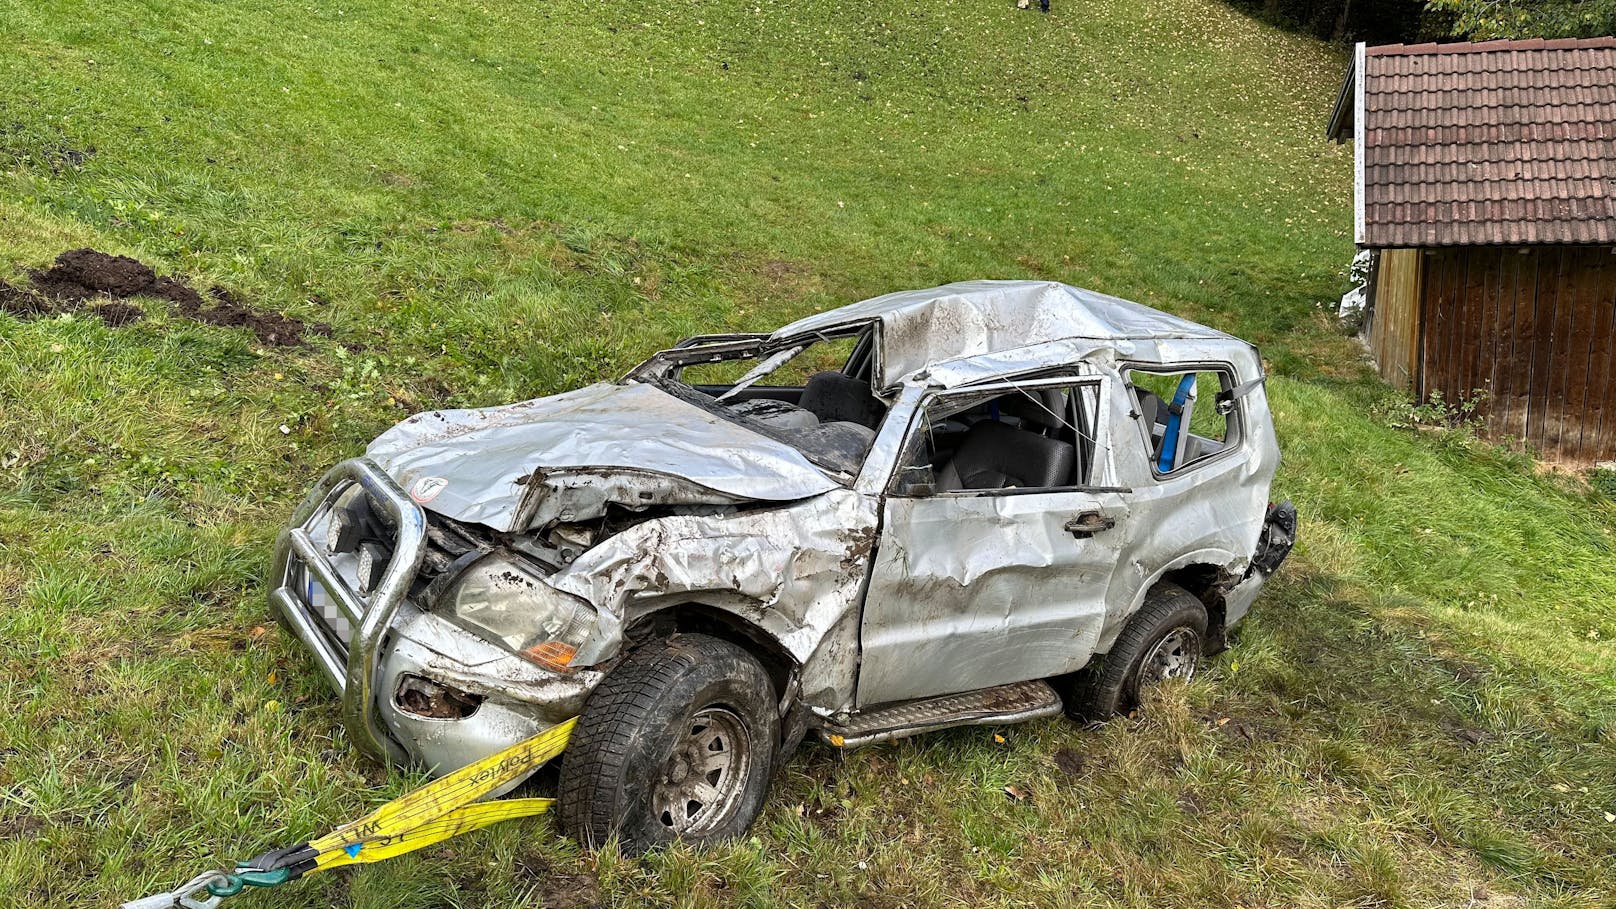 Der Unfall ereignete sich am Montag gegen 9 Uhr in Wattens. Ein 51-jähriger Österreicher war mit seinem Pkw auf der Gemeindestraße Vögelsberg von Süden kommend in Richtung Norden unterwegs.